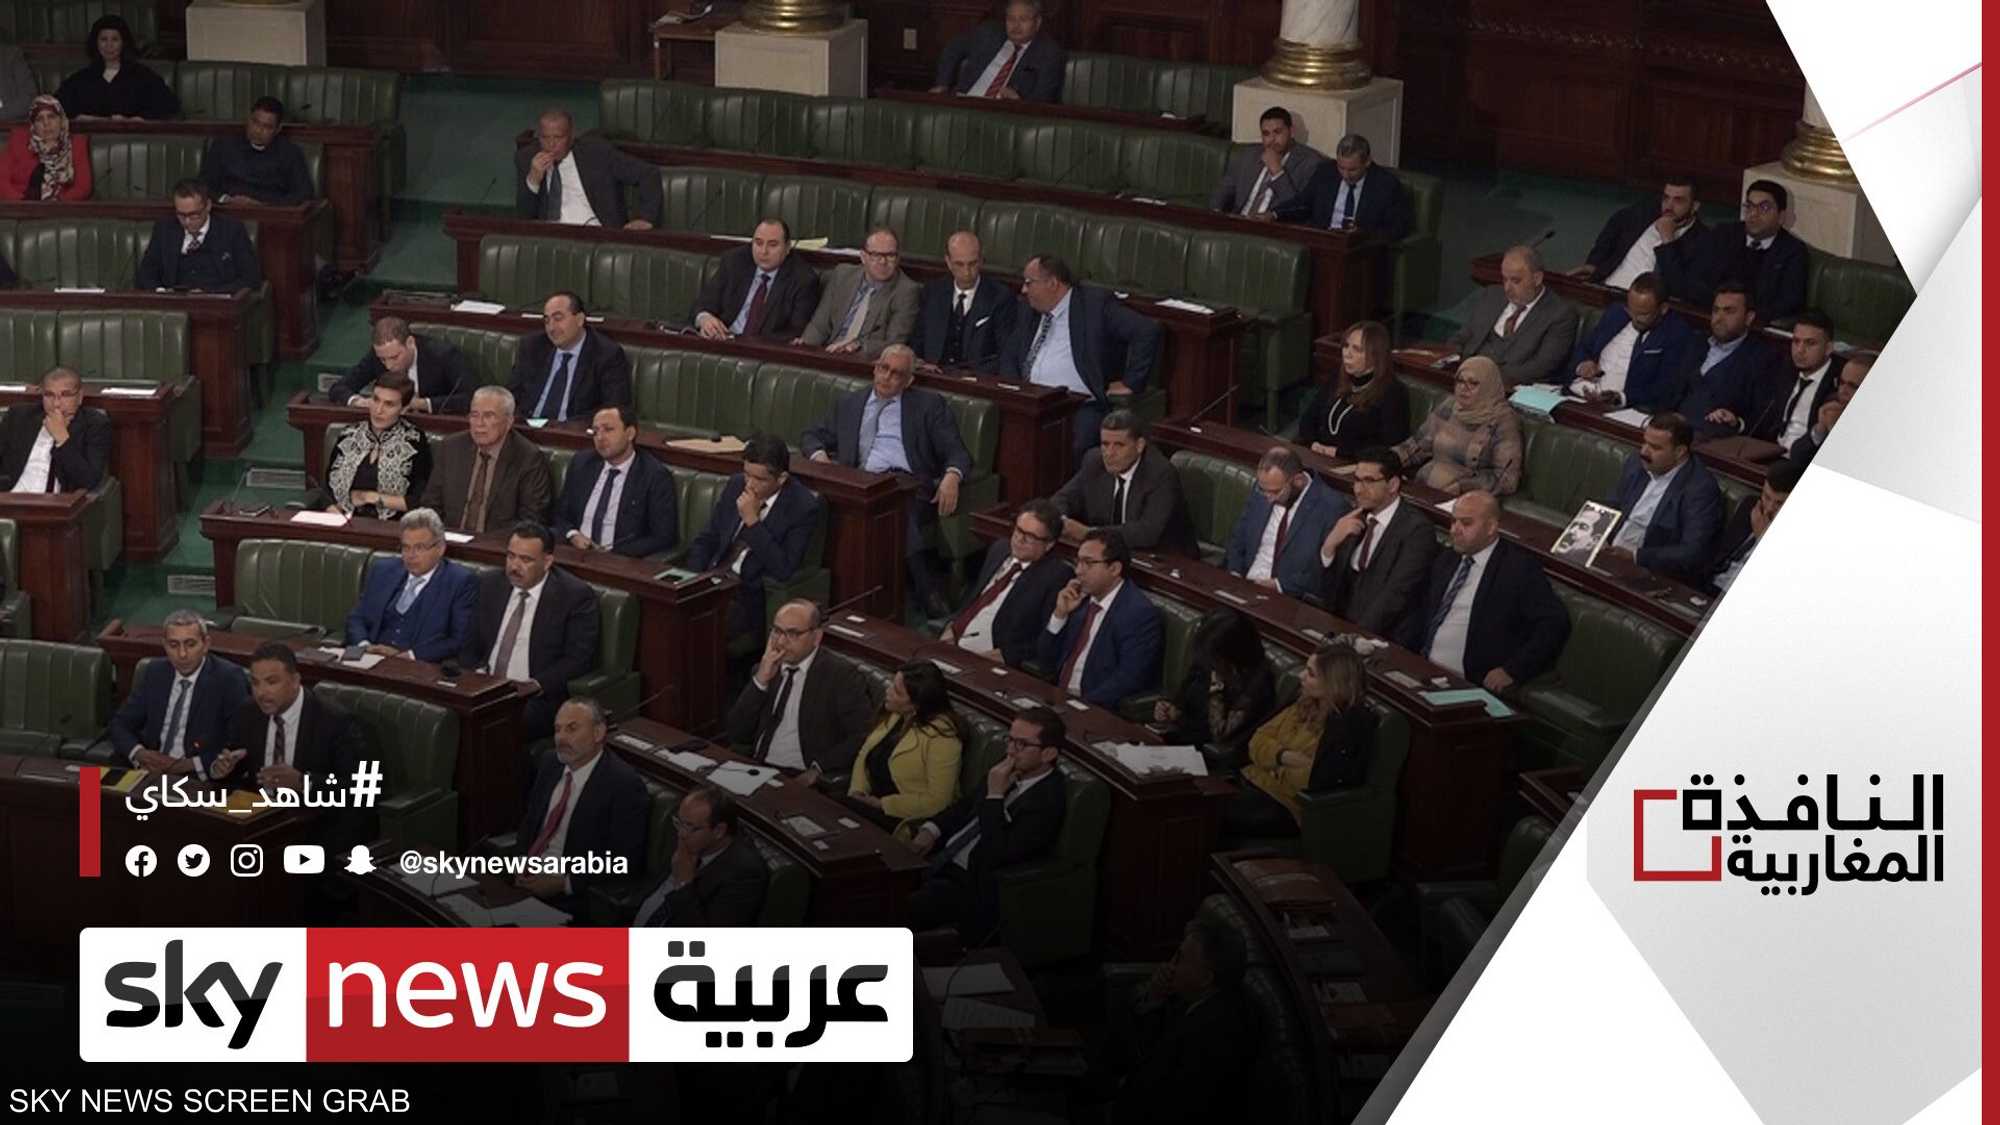 تونس.. التحقيق مع قيادات أحزاب سياسية بتهم مخالفات انتخابية